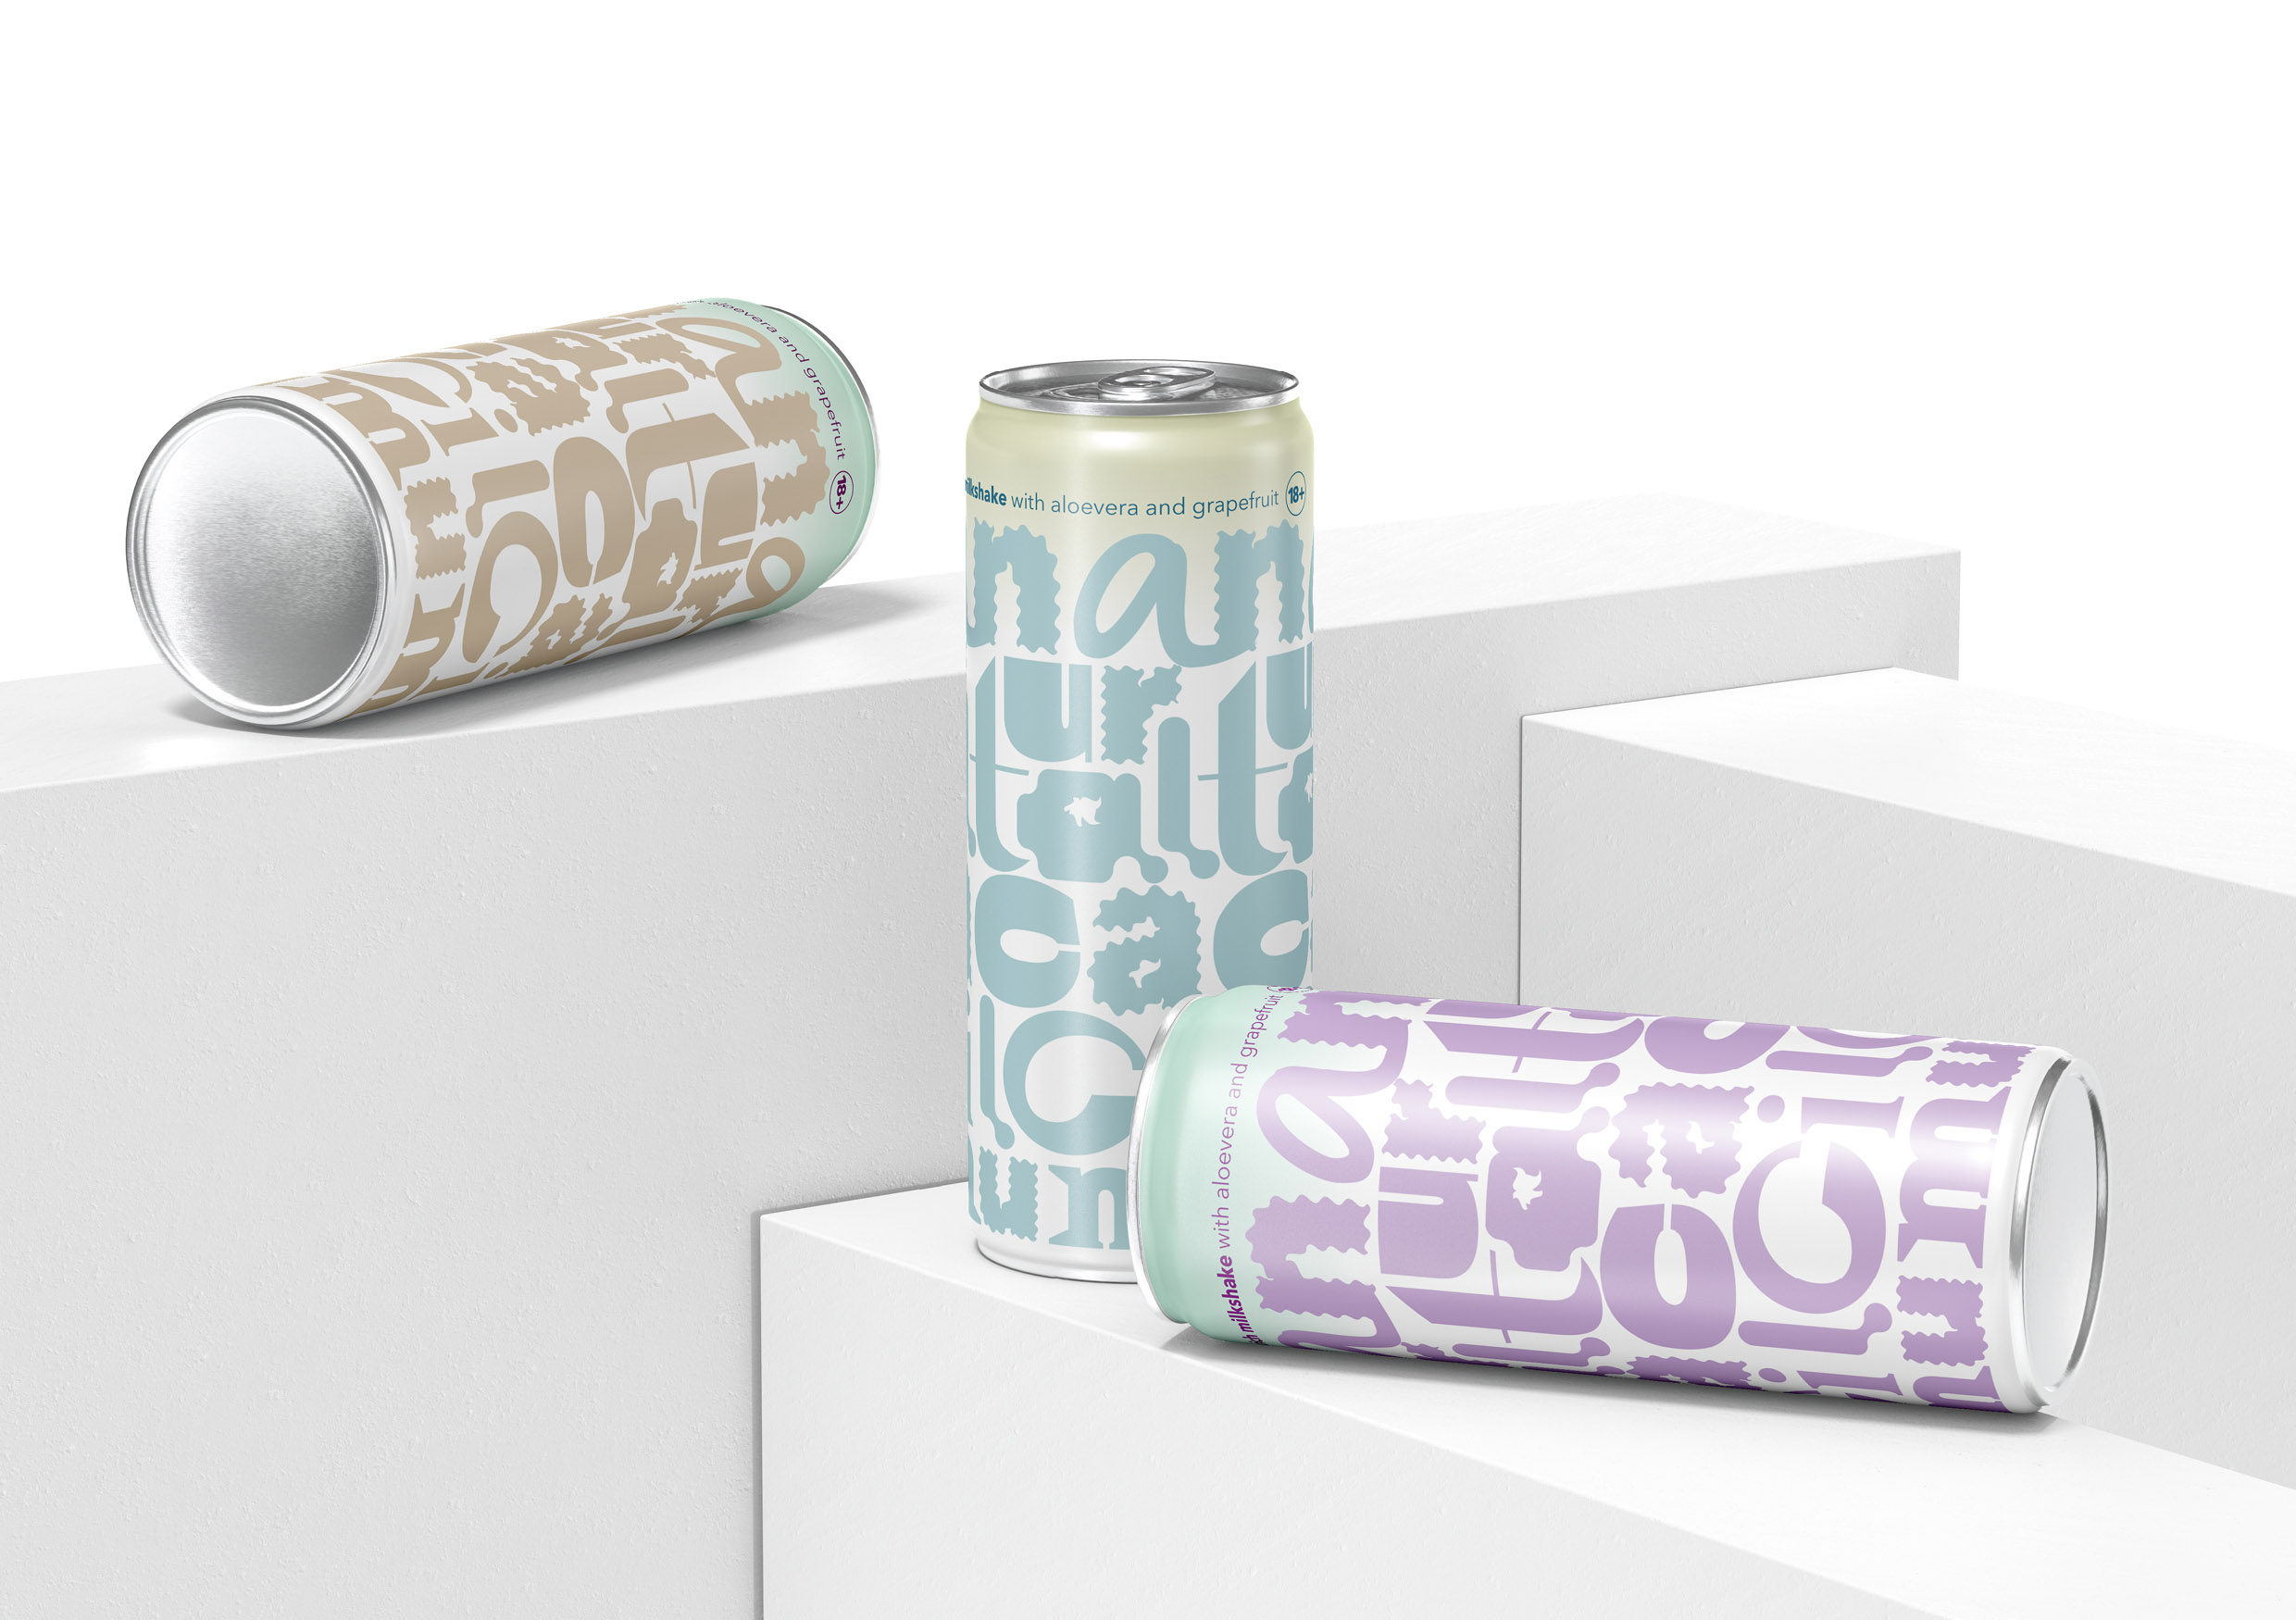 Natural Calcium Milkshake Cocktail Packaging Concept by Tanya Dunaeva ...